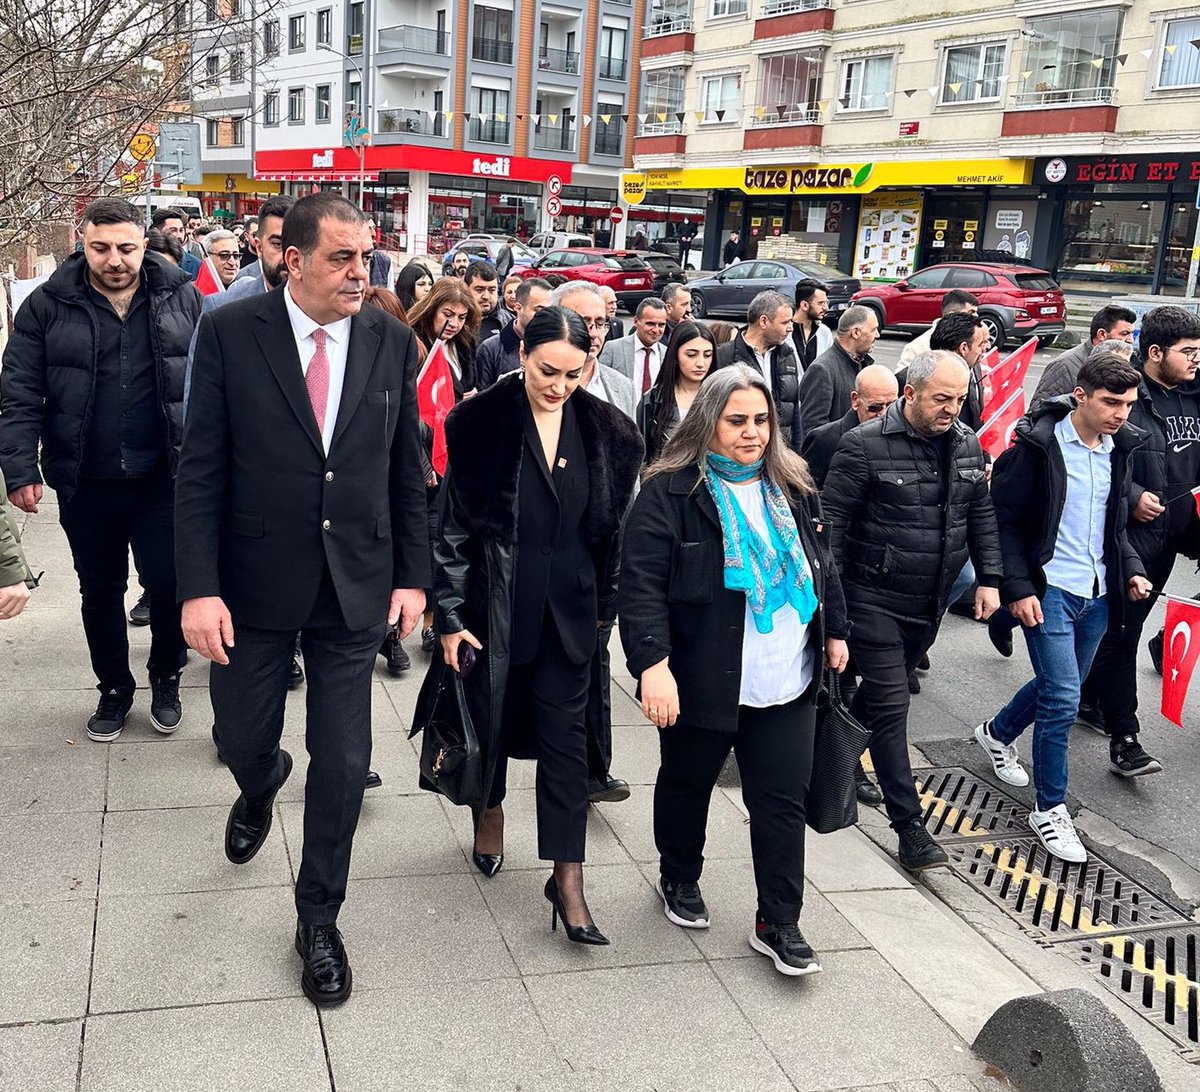 #Çekmeköy’de gece gündüz demeden zafere ve iktidara yürüdük Durcan Uzunay kardeşimle. Enerjisi ve partimize aidiyeti ile mücadelemize güç kattı. CHP Çekmeköy Kadın Kolları Başkanlığı için çıktığı yolda, tüm yoldaşlarımın tam destek vereceğine eminim. Bu kararlılık, bu mücadele…